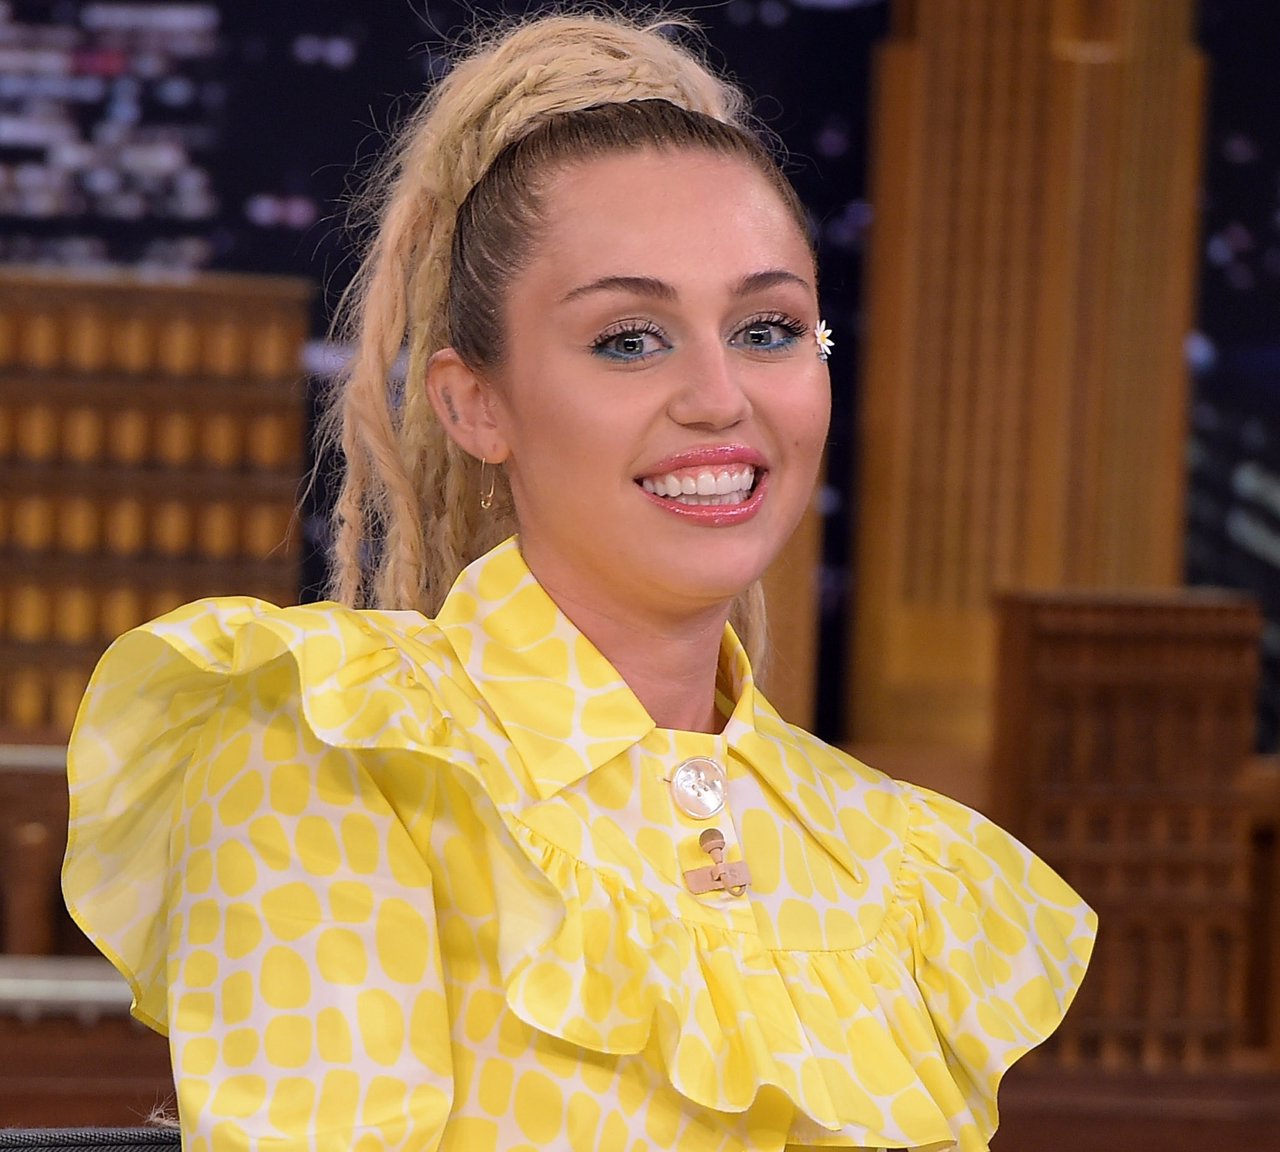   Miley Cyrus